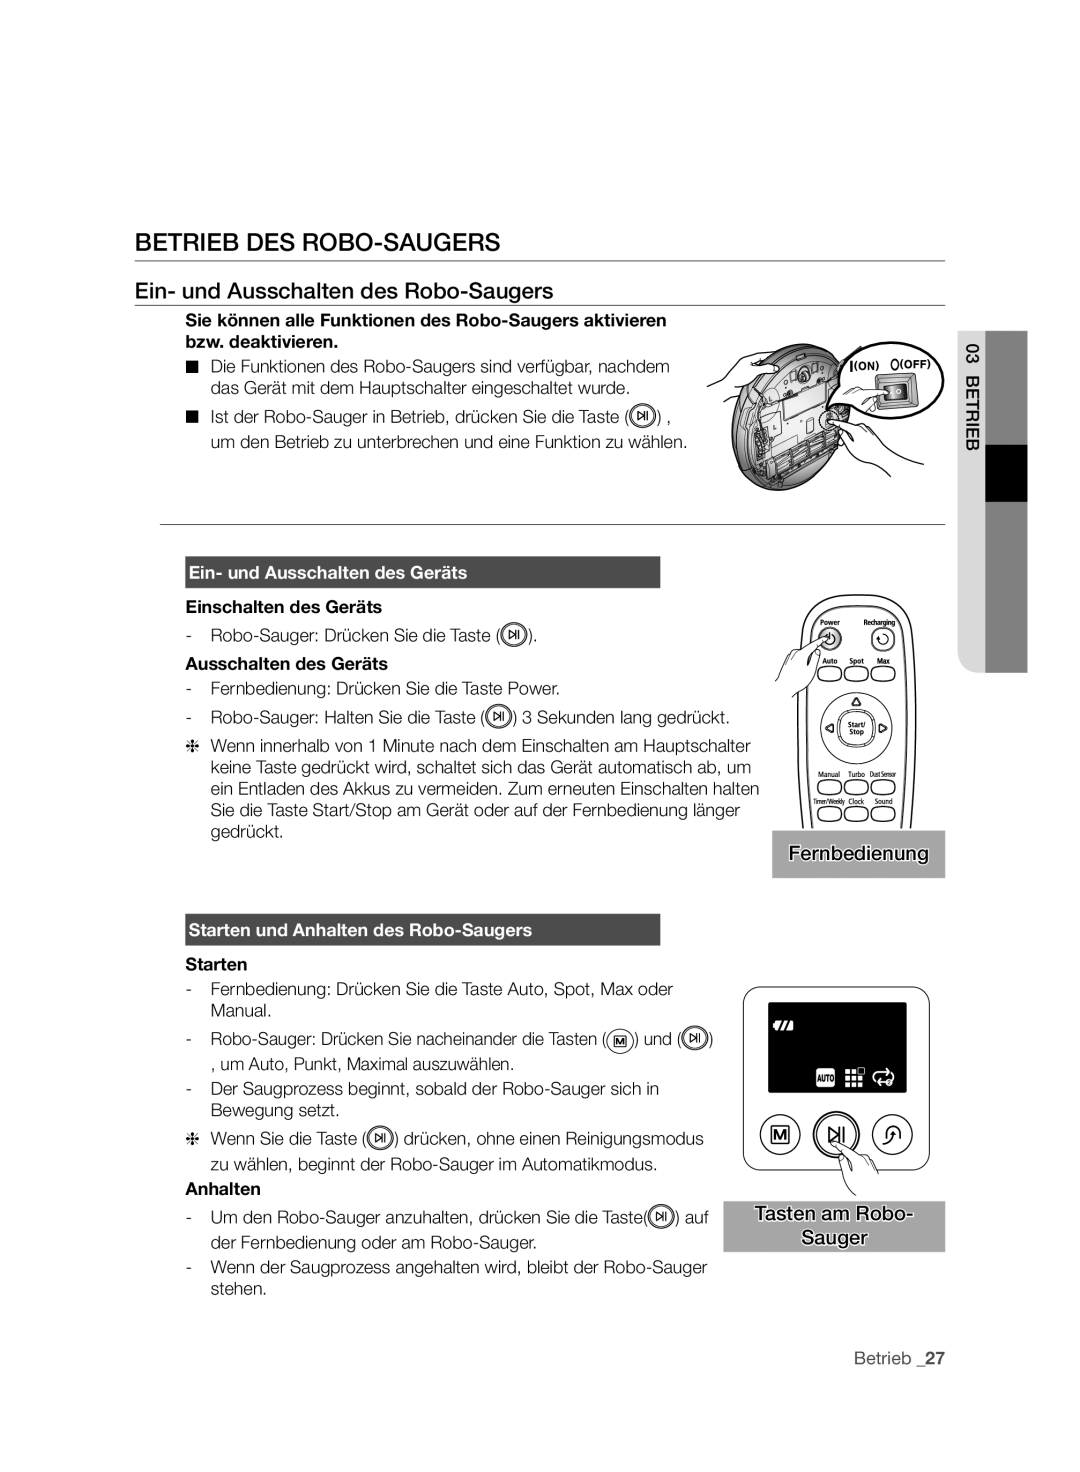 Samsung VCR8950L3B/XEF Betrieb Des Robo-Saugers, Ein- und Ausschalten des Robo-Saugers, Fernbedienung, Starten, Anhalten 